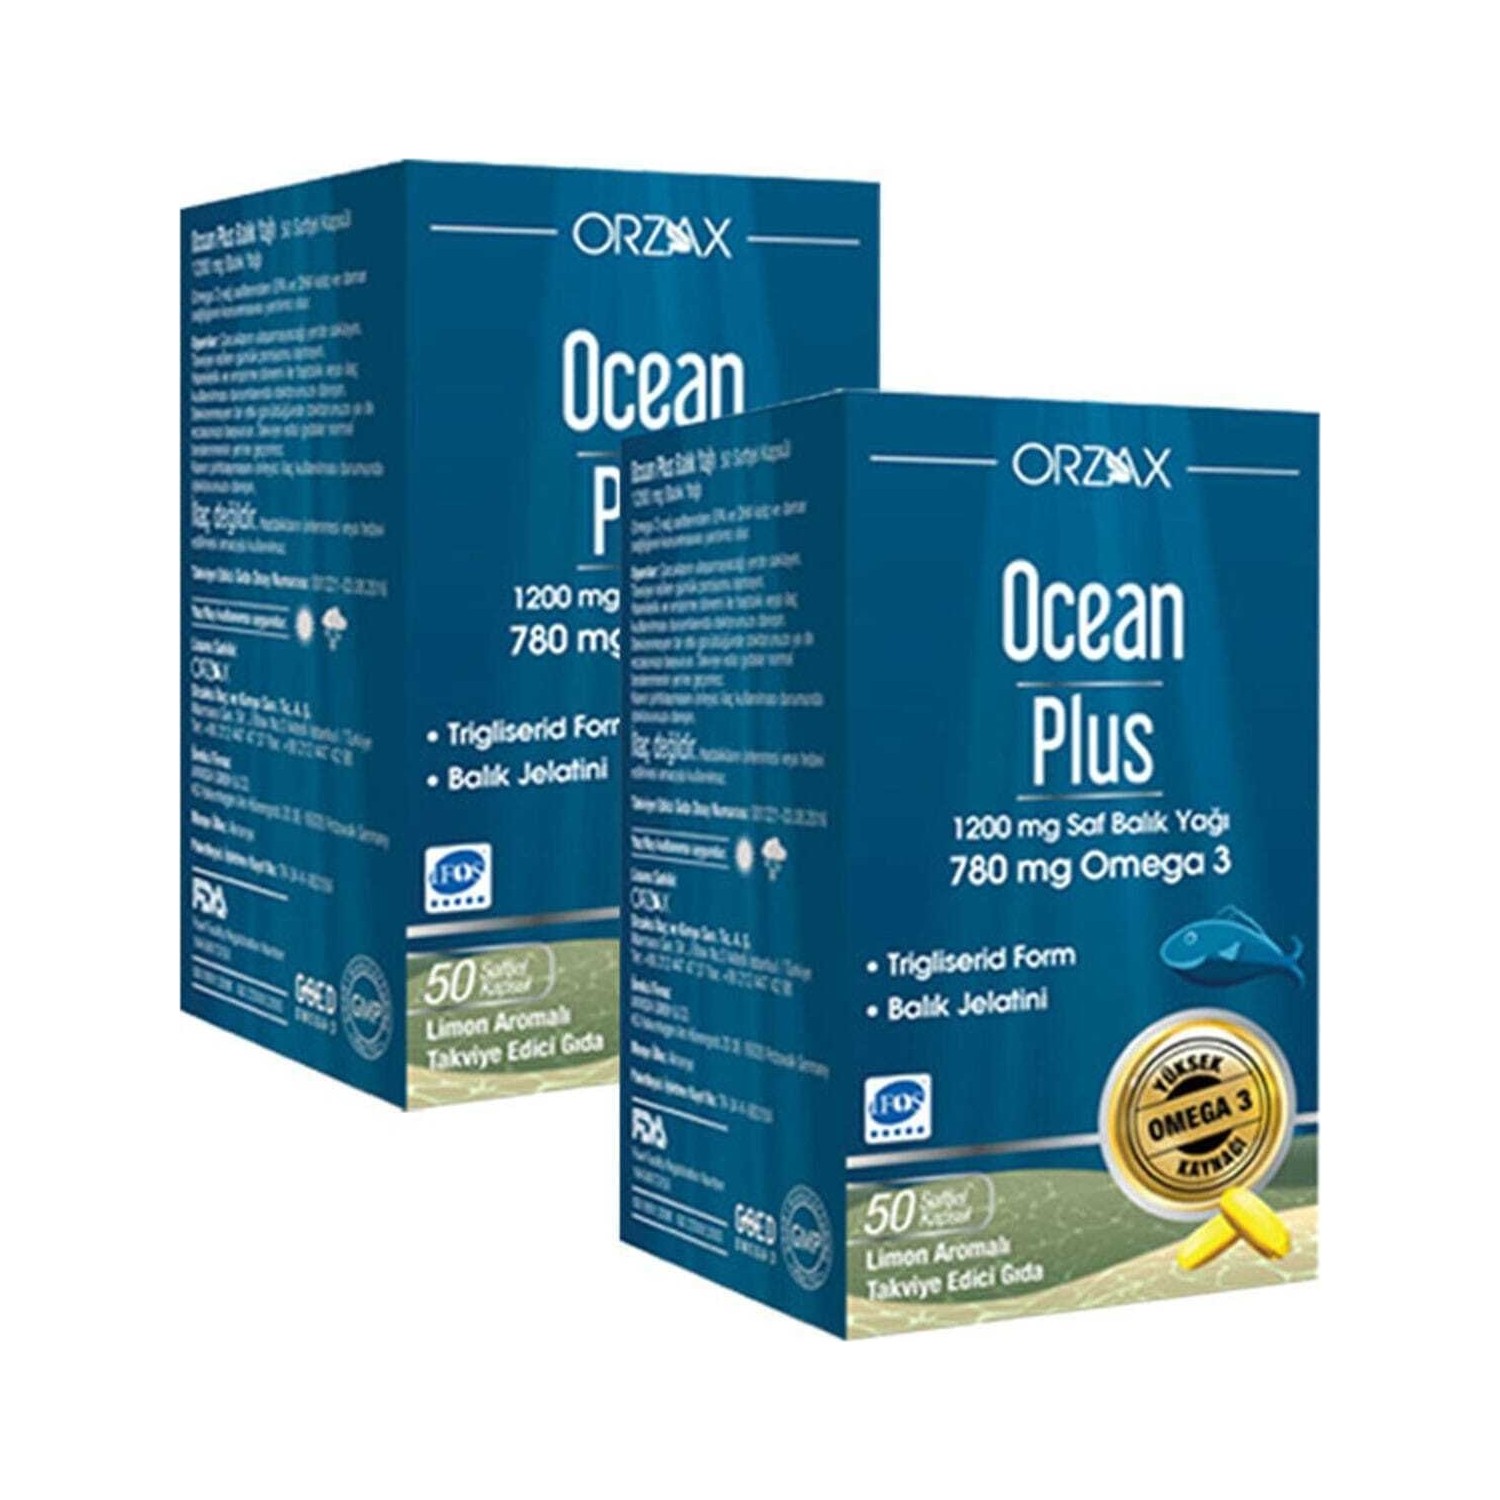 Омега-3 Plus Orzax 1200 мг, 2 упаковки по 50 капсул омега 3 ocean plus 1200 мг 50 капсул сироп multi 150 мл